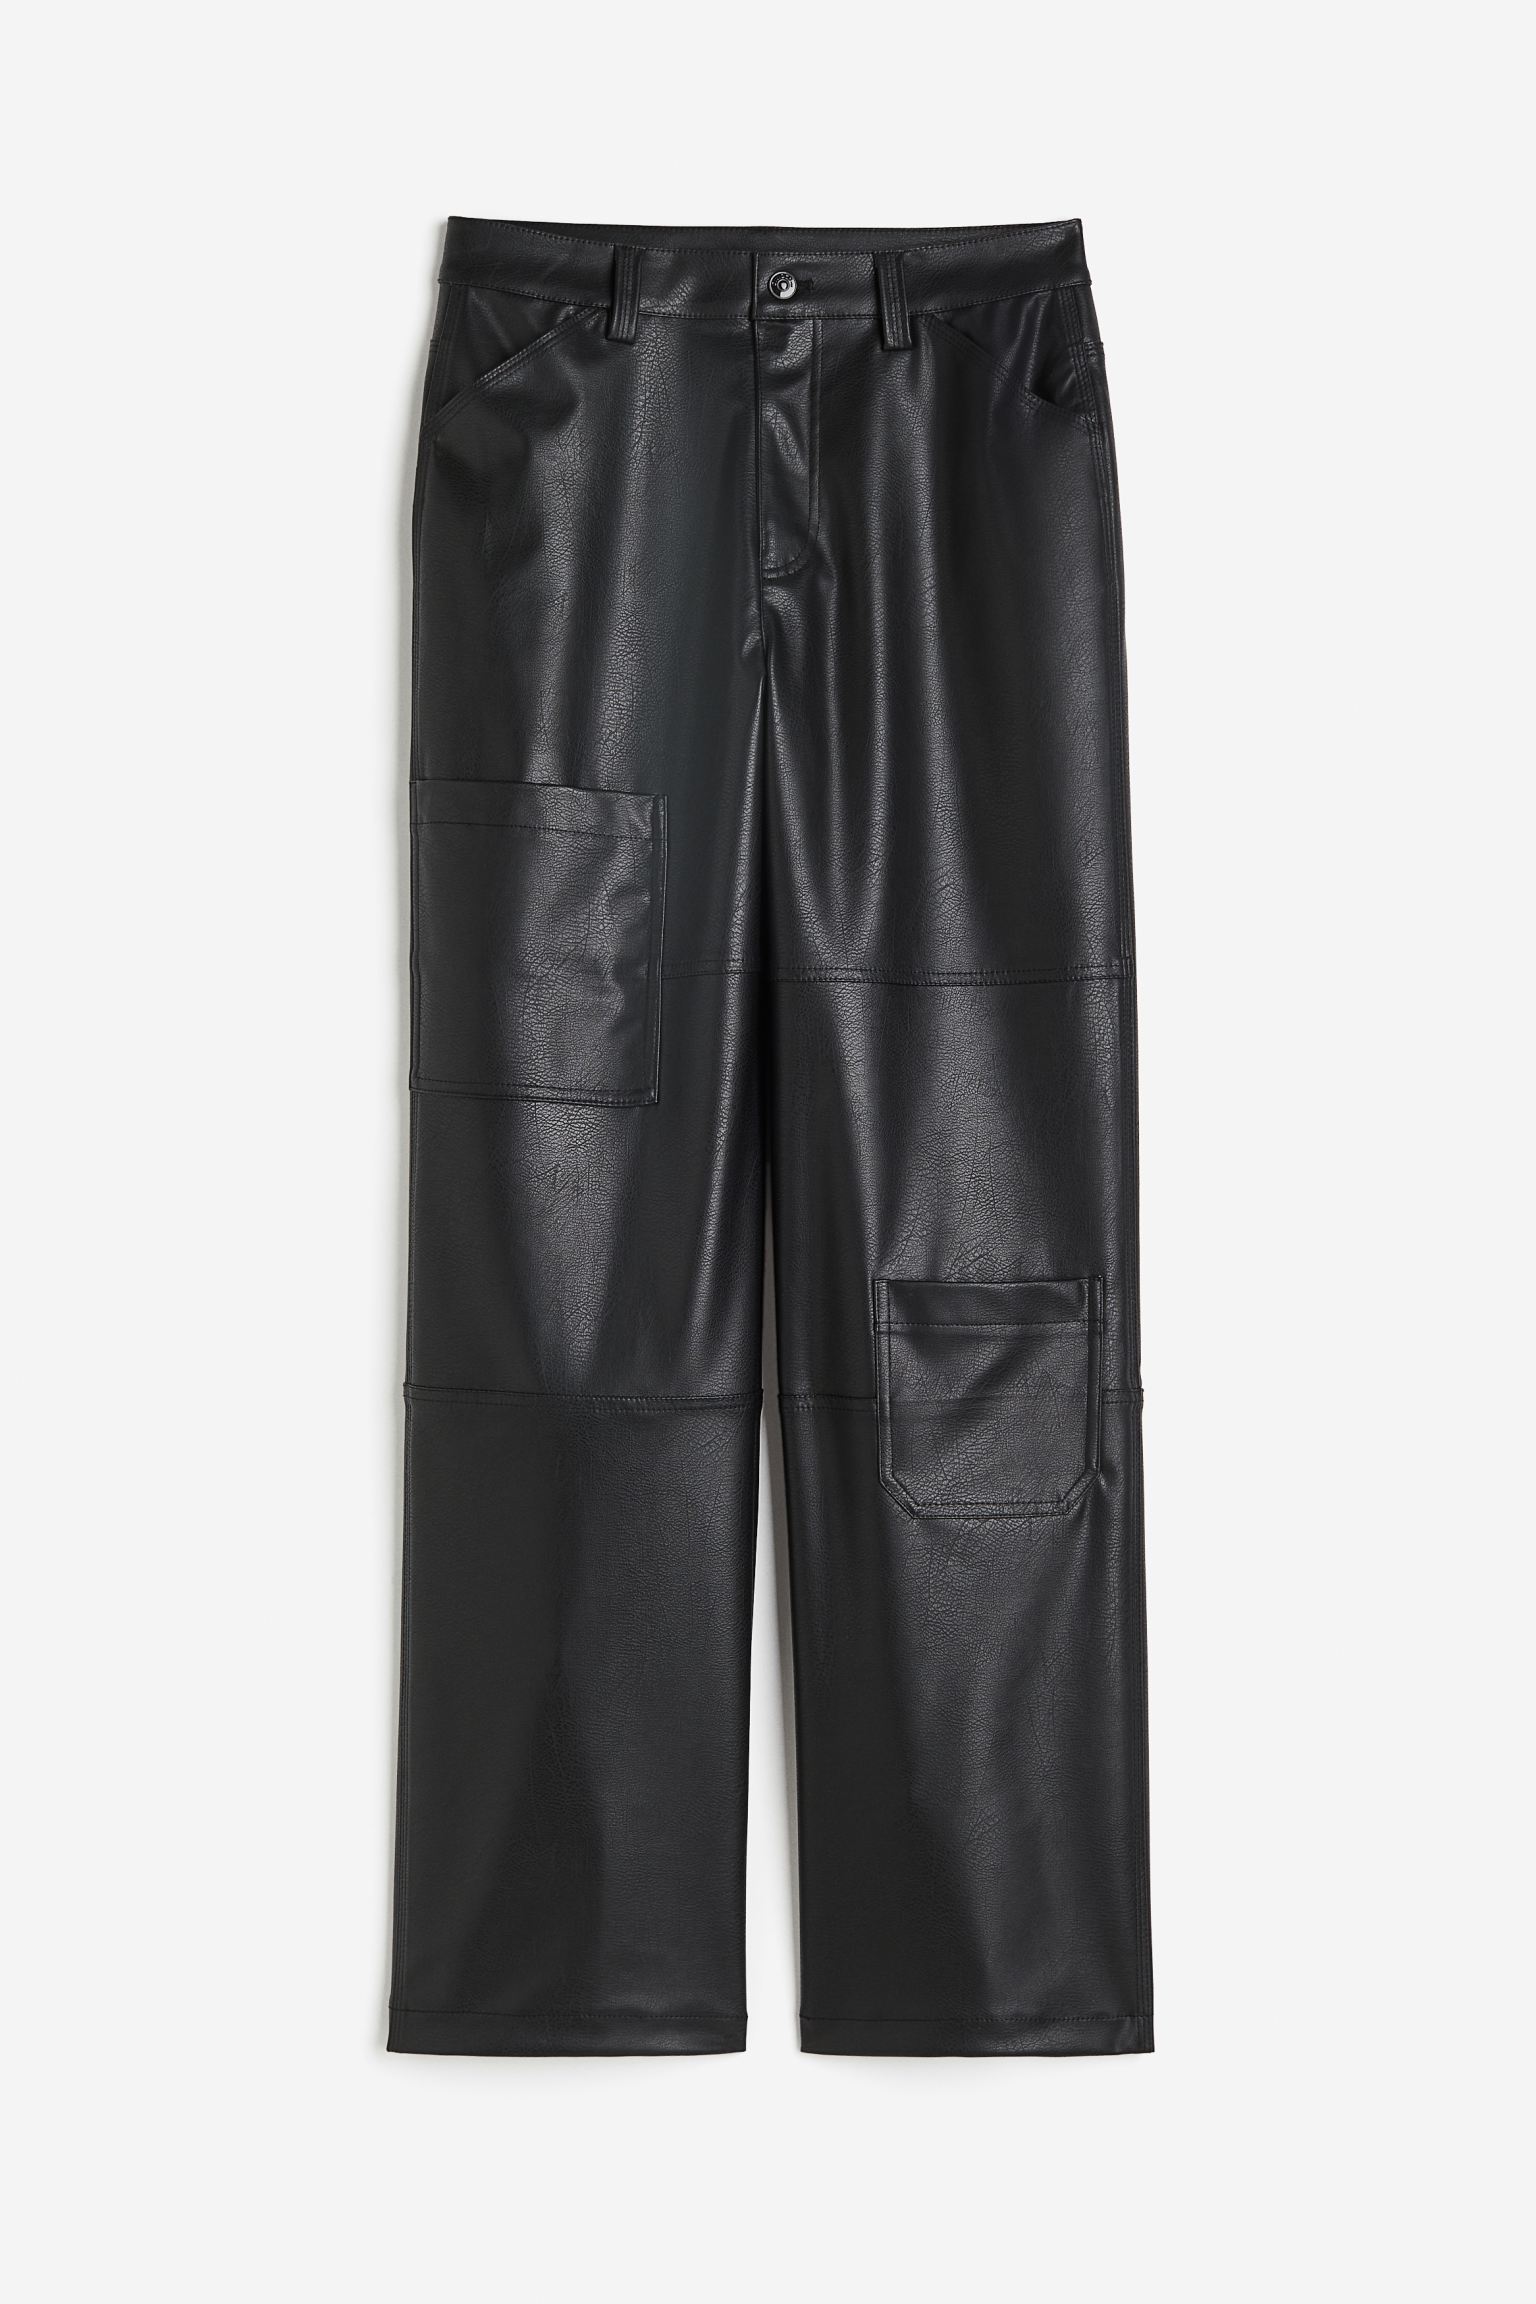 Брюки H&M Denim Cargo, черный женские повседневные брюки армейского зеленого цвета брюки карго на молнии с карманами и высокой талией модные свободные брюки карандаш б